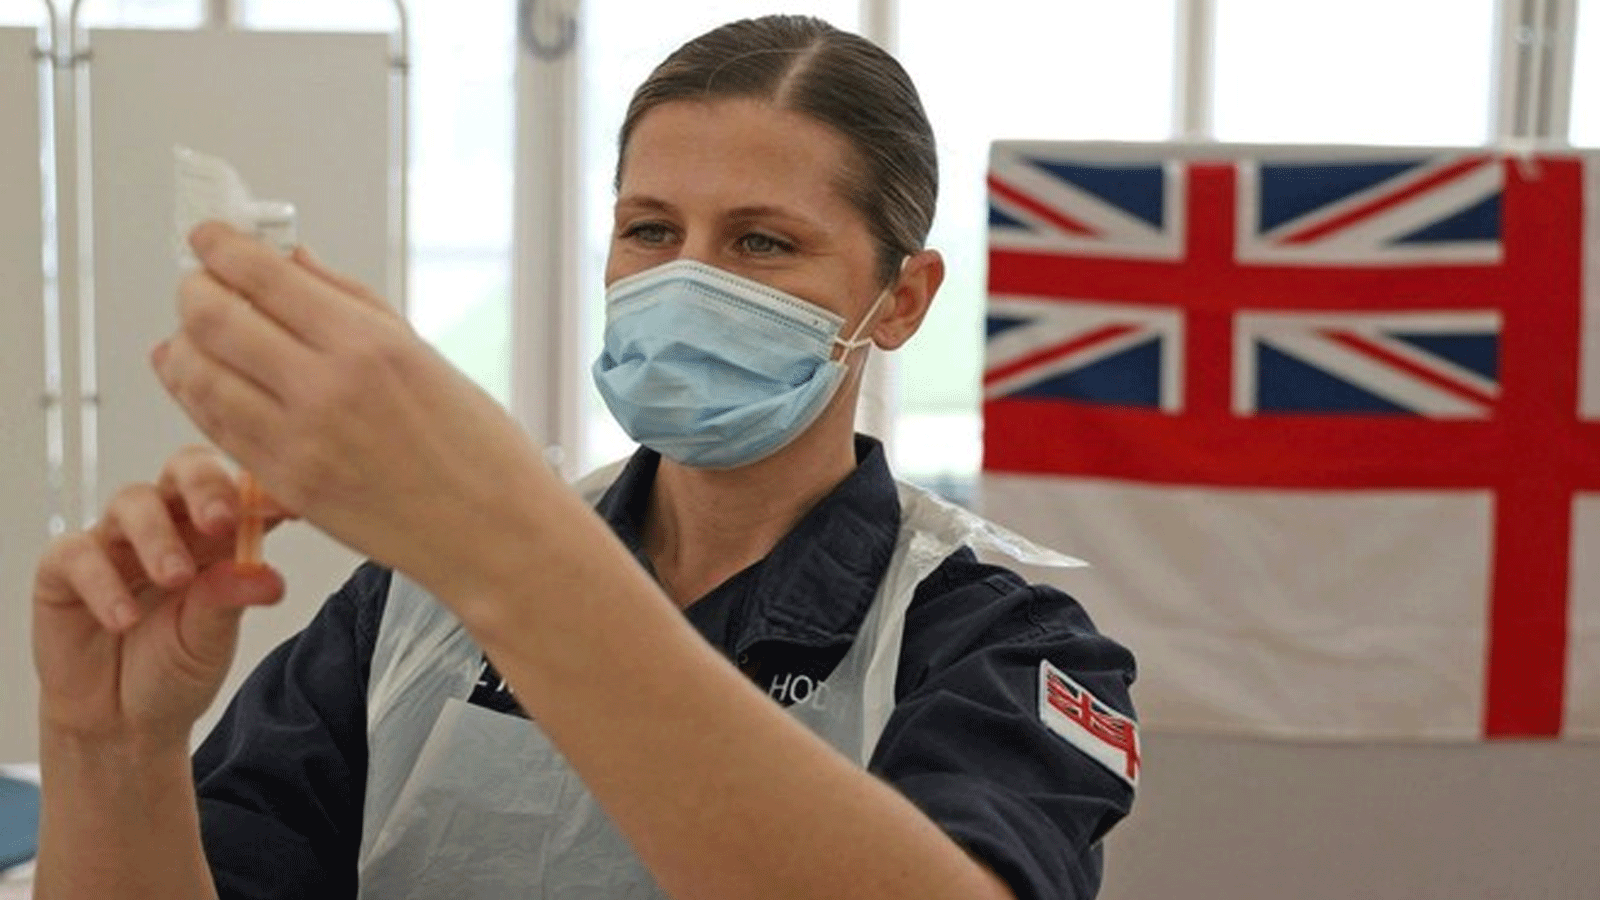 طبيبة في البحرية الملكية تُعد حقن لقاح أكسفورد / أسترا زينيكا Covid-19 في باث، جنوب غرب إنجلترا